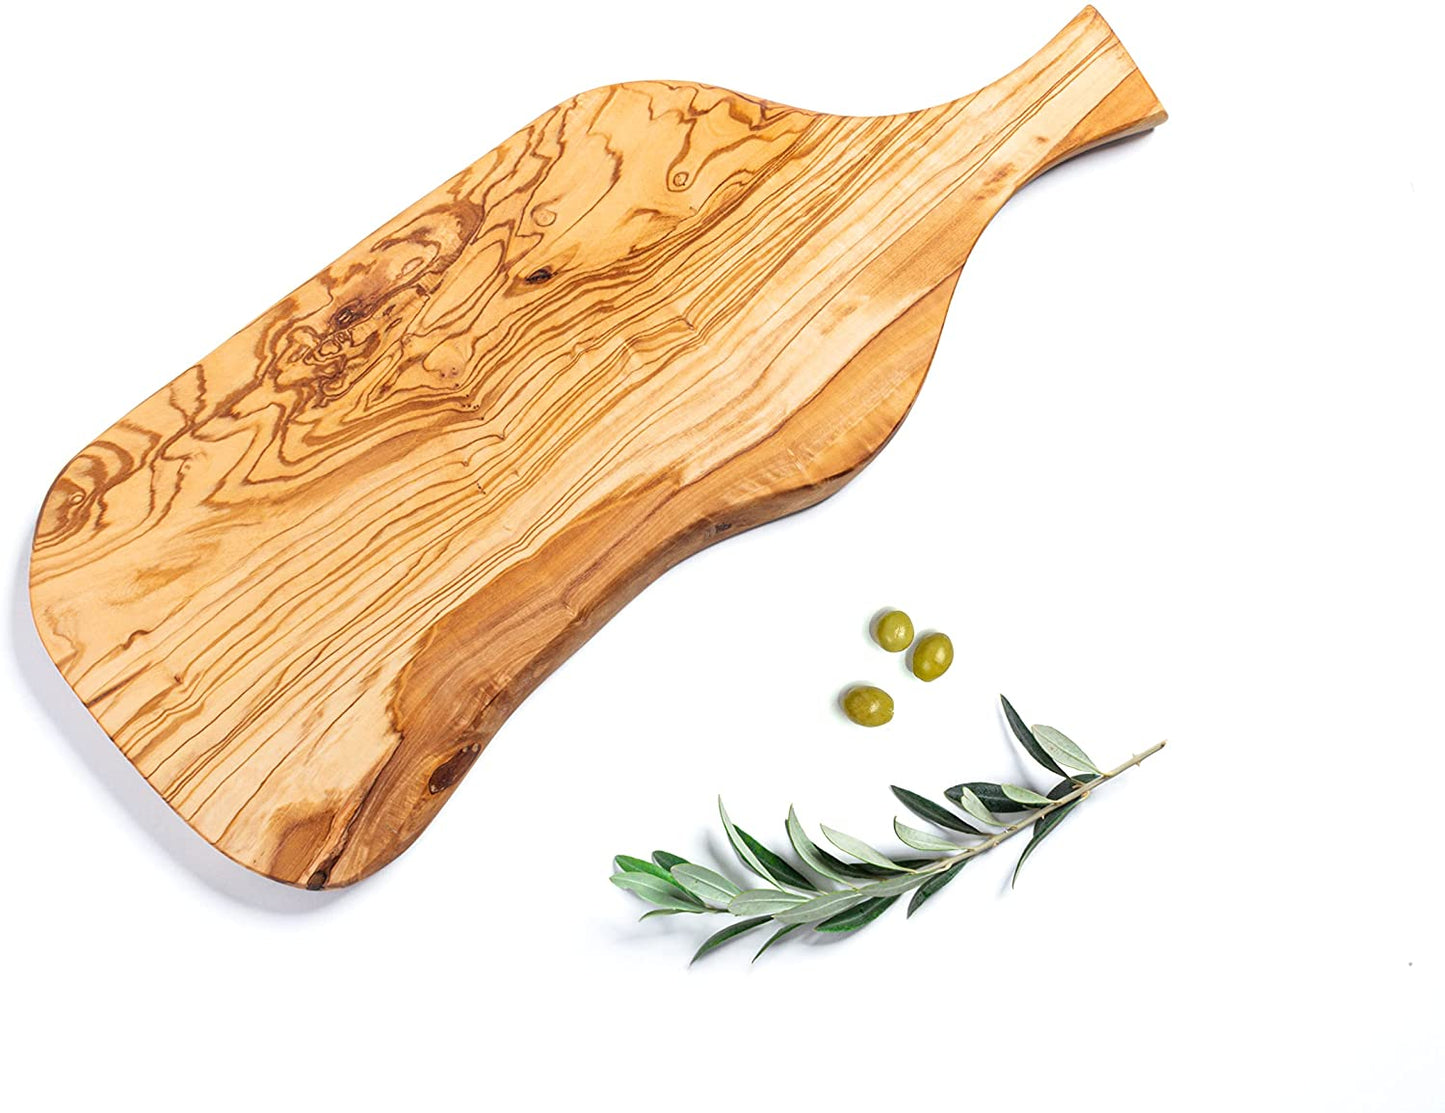 Aperitif serving board in olive wood